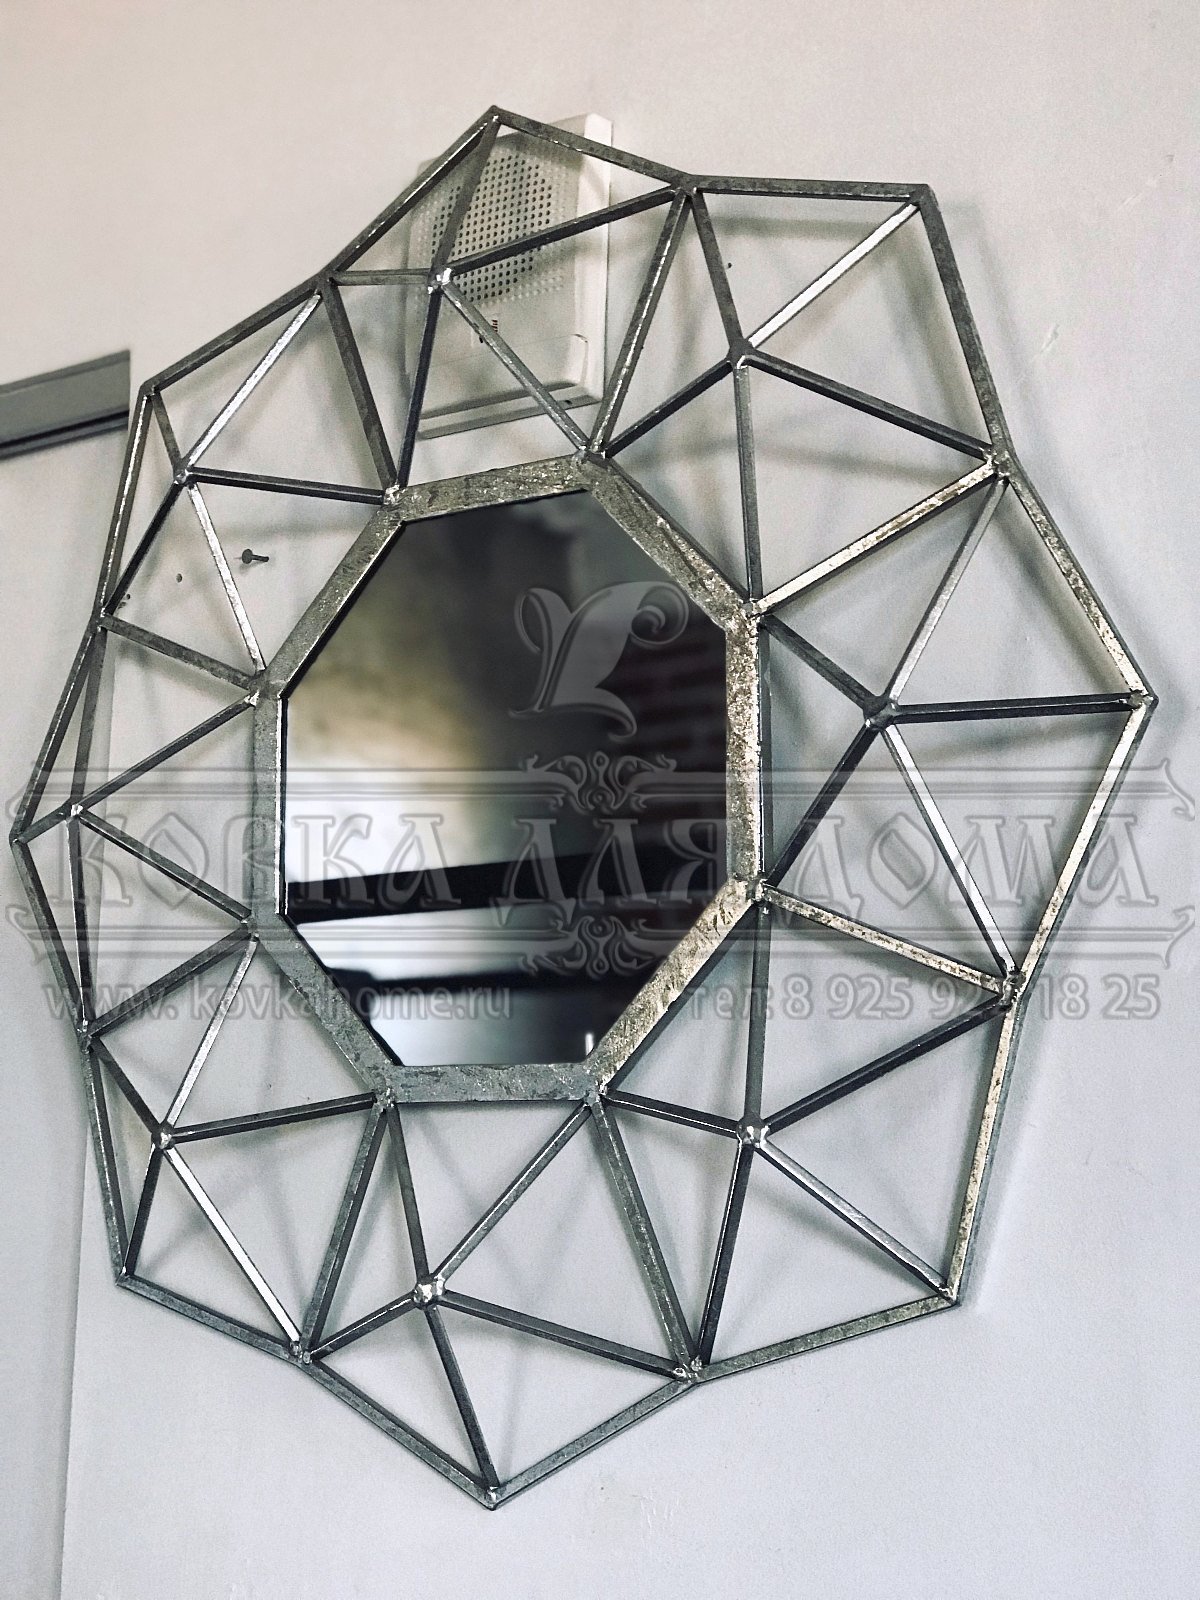 Зеркало в современном стиле в кованой дизайнерской раме звезда геометрии, ручной работы. Размер габаритный D=500мм.